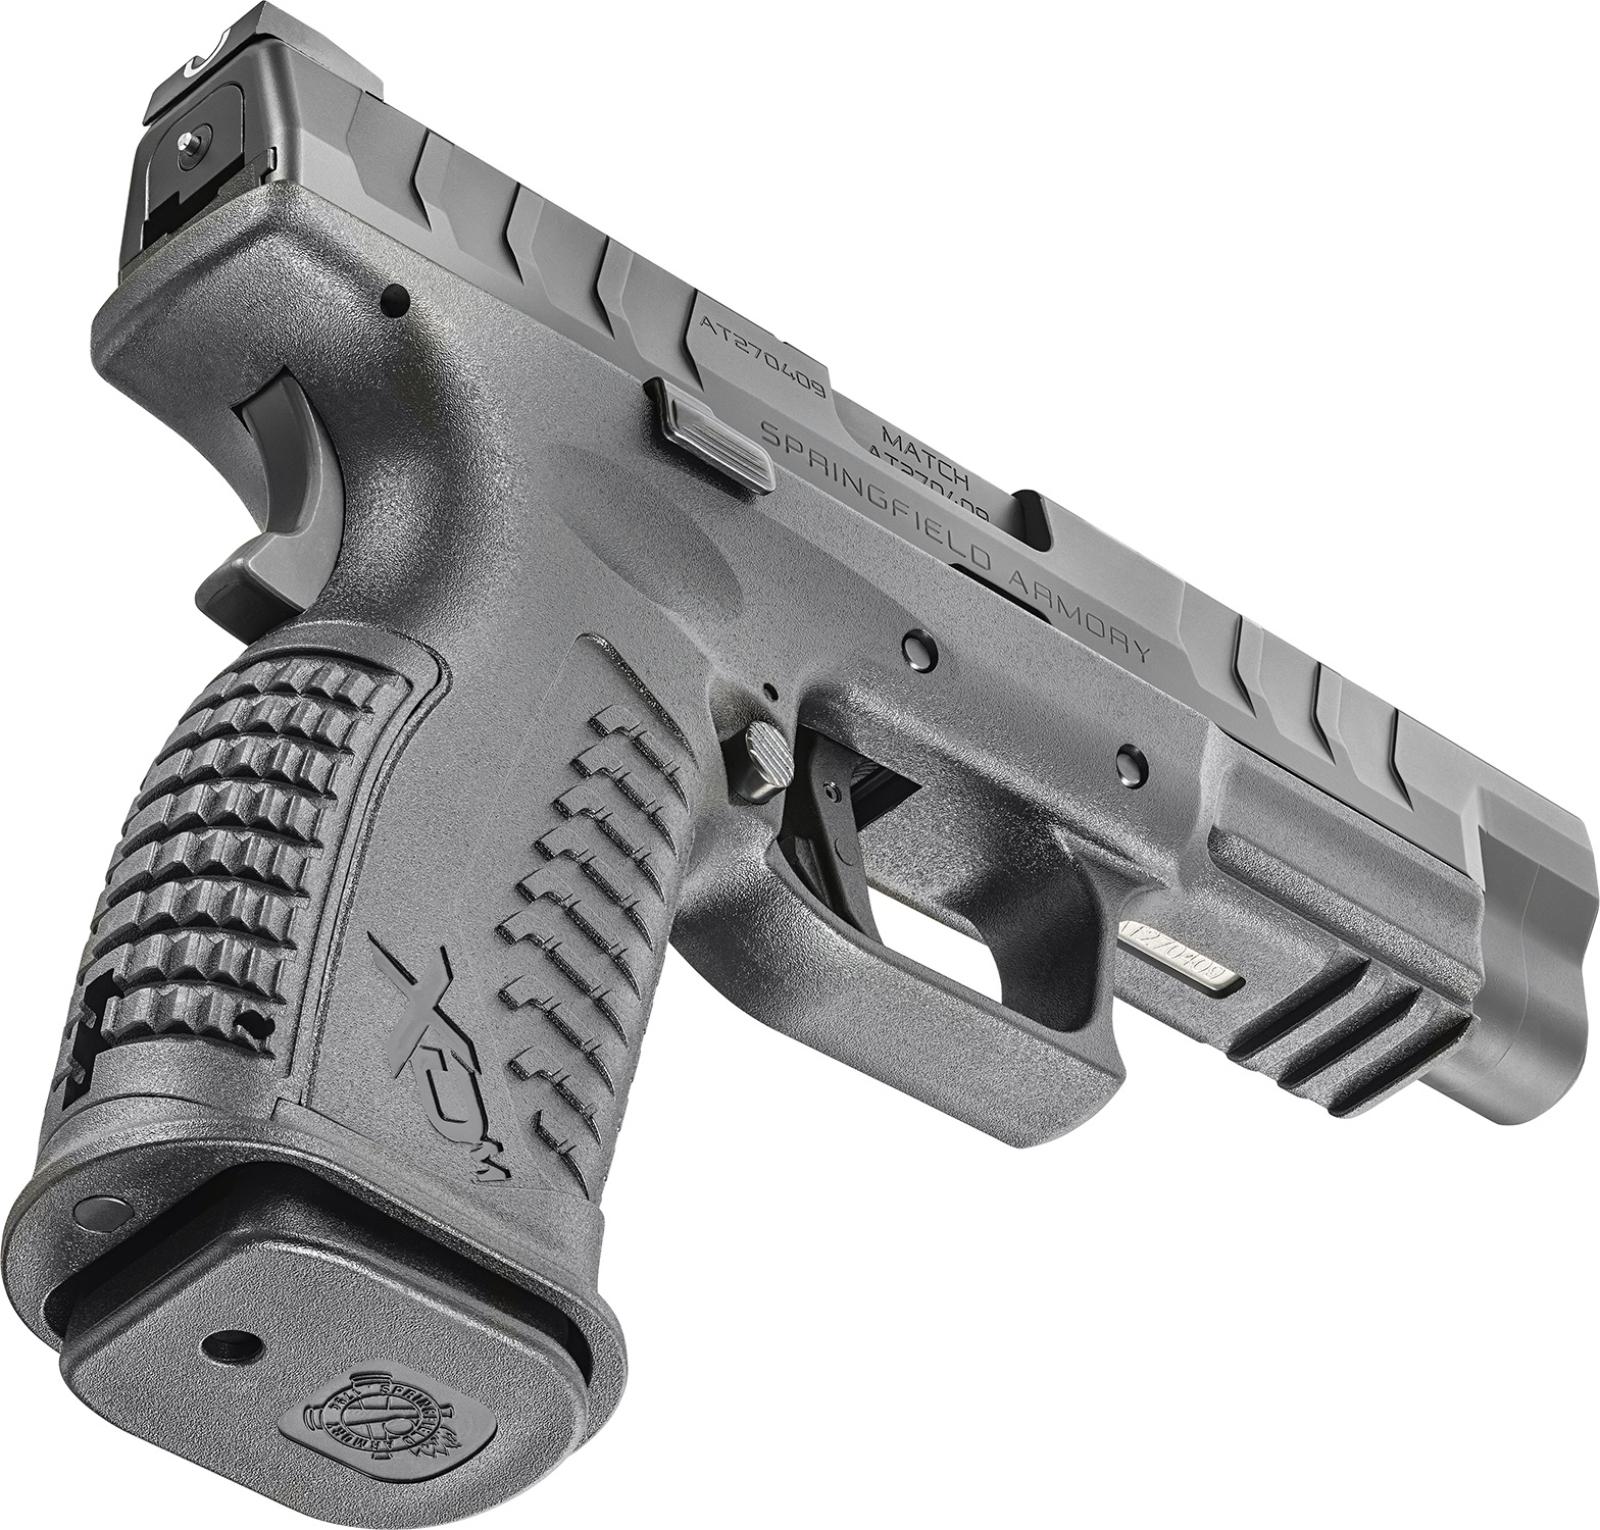 Springfield XD-M Elite 4.5″ 9mm Handgun